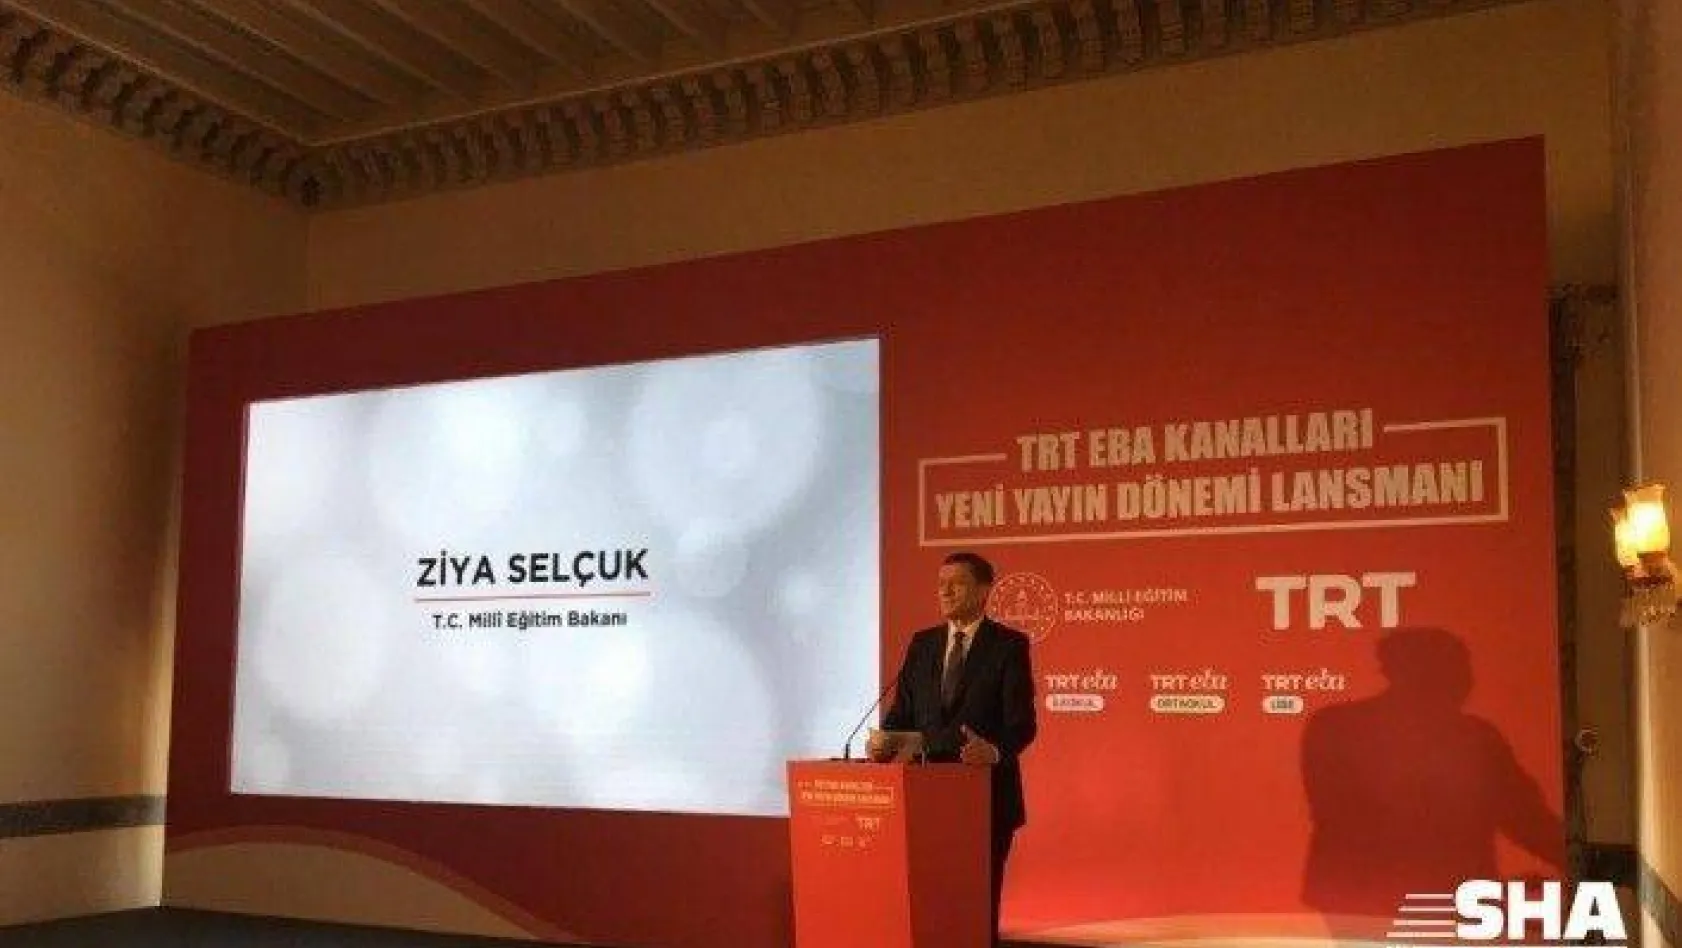 TRT EBA Kanalları, Özel İçerikleriyle 21 Eylül'de Yeni Yayın Dönemine Hazır